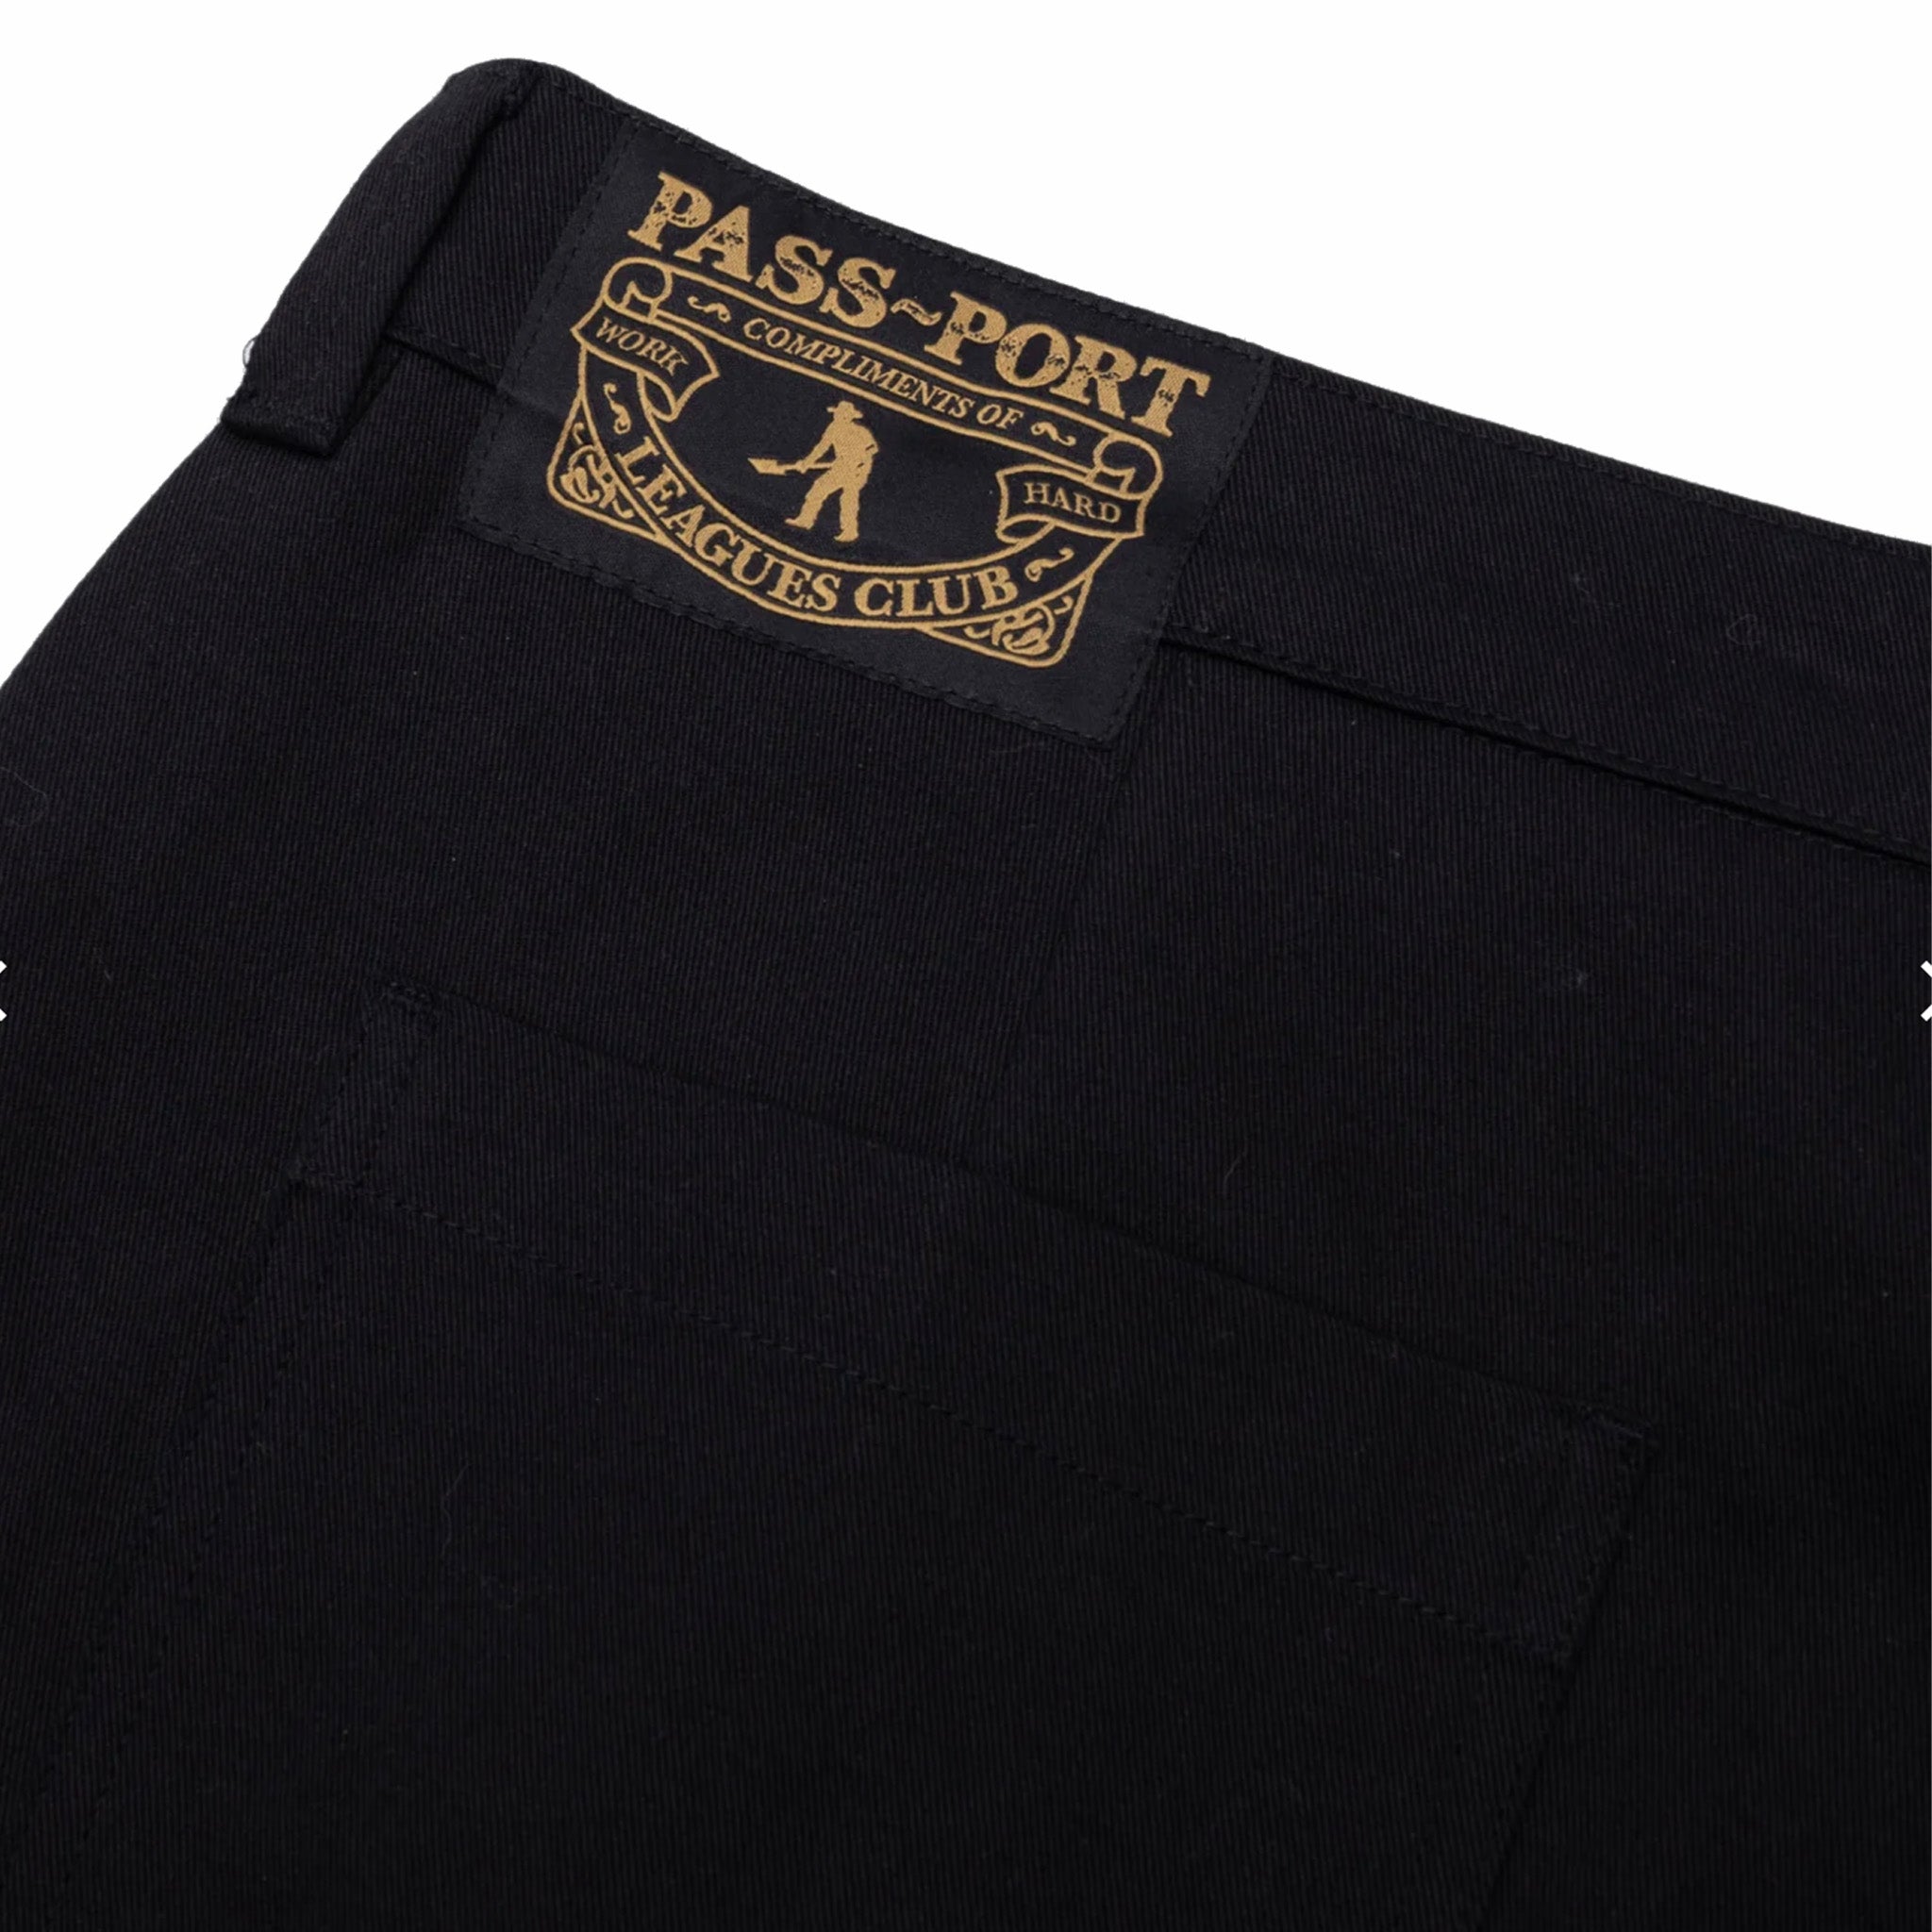 Pass~Port Leagues Club Pant (Black) - August Shop